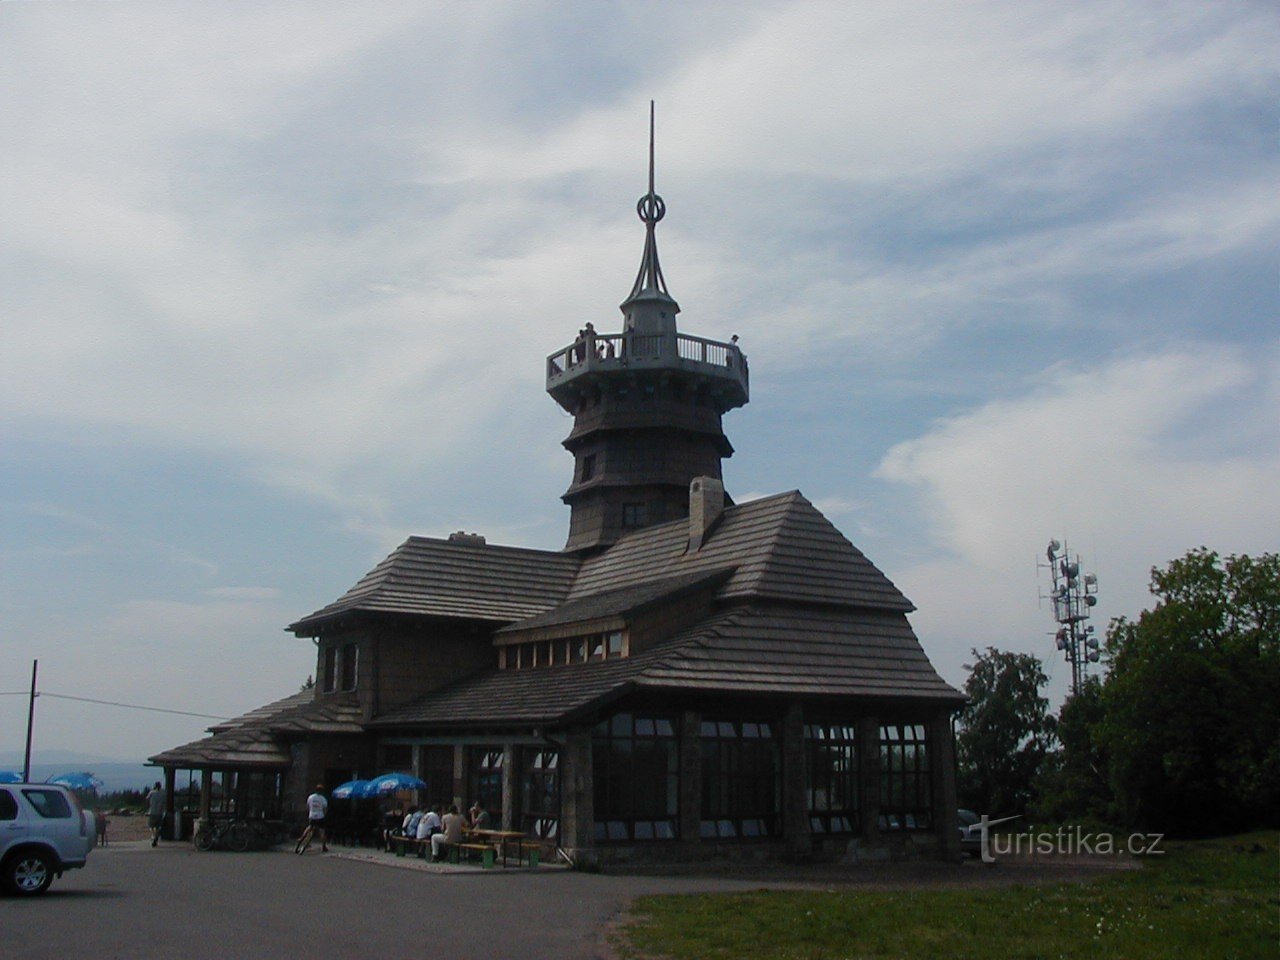 Lookout tower on Dobrošov - Jiráskova cottage